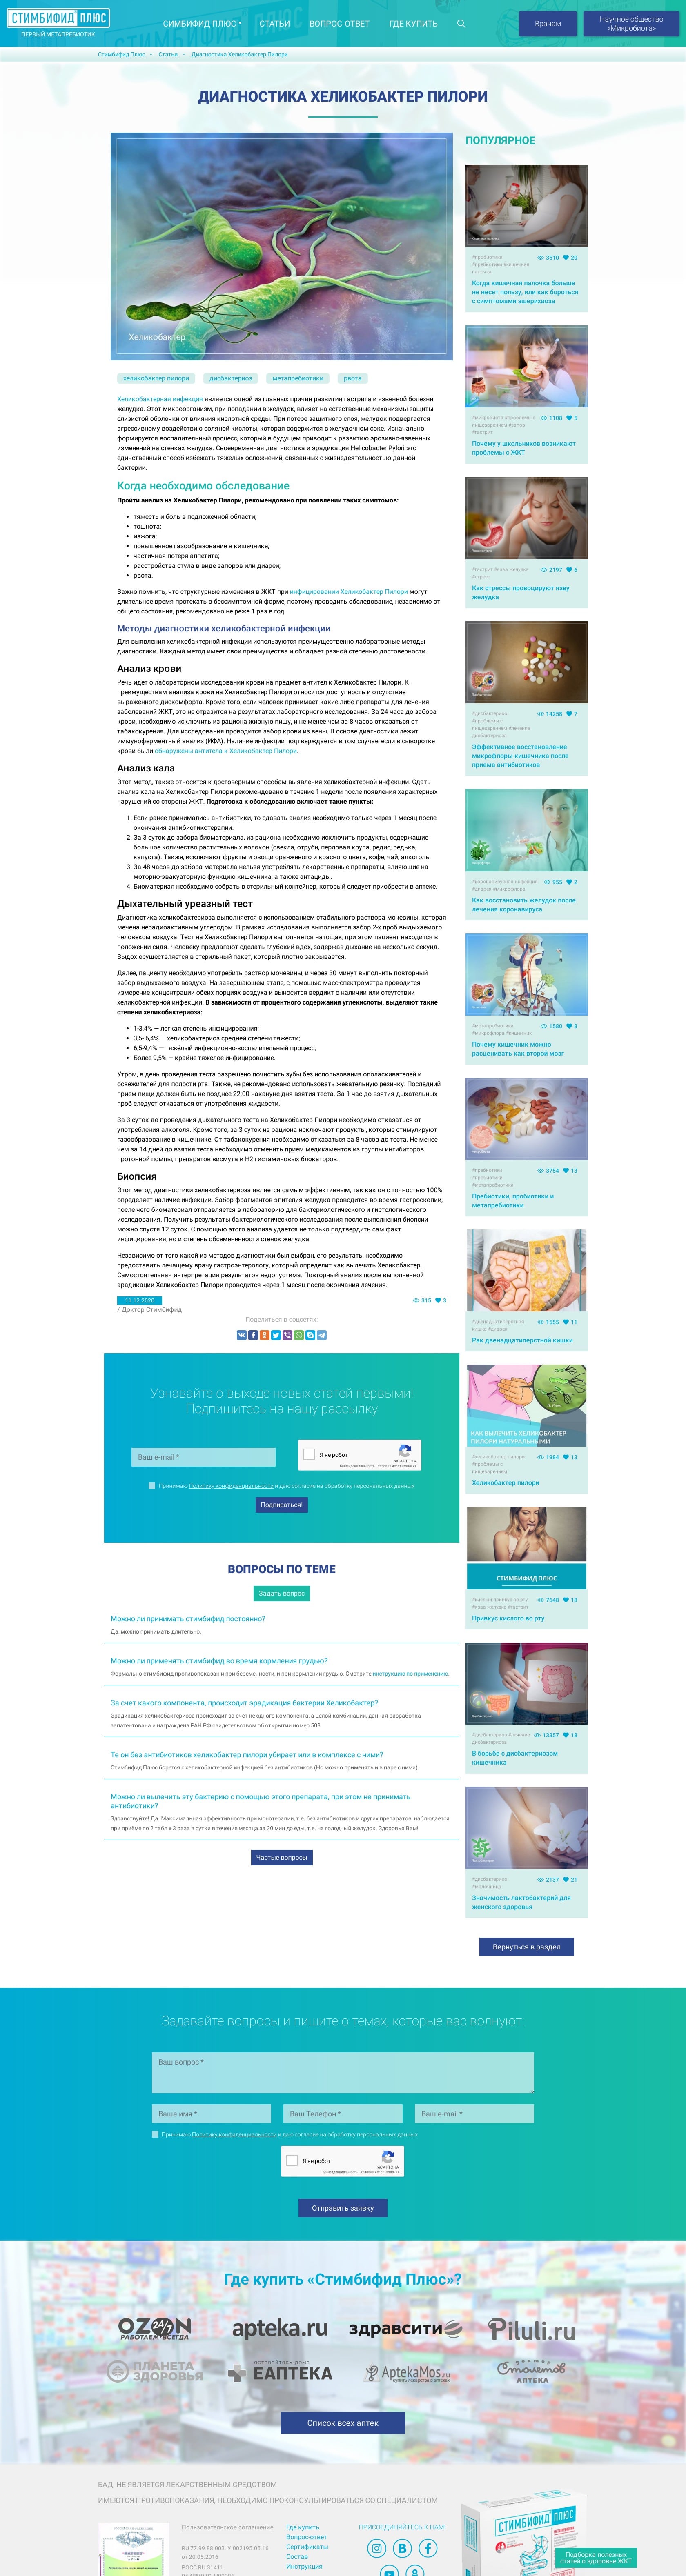 Дизайн сайта стимбифид медицинской тематики